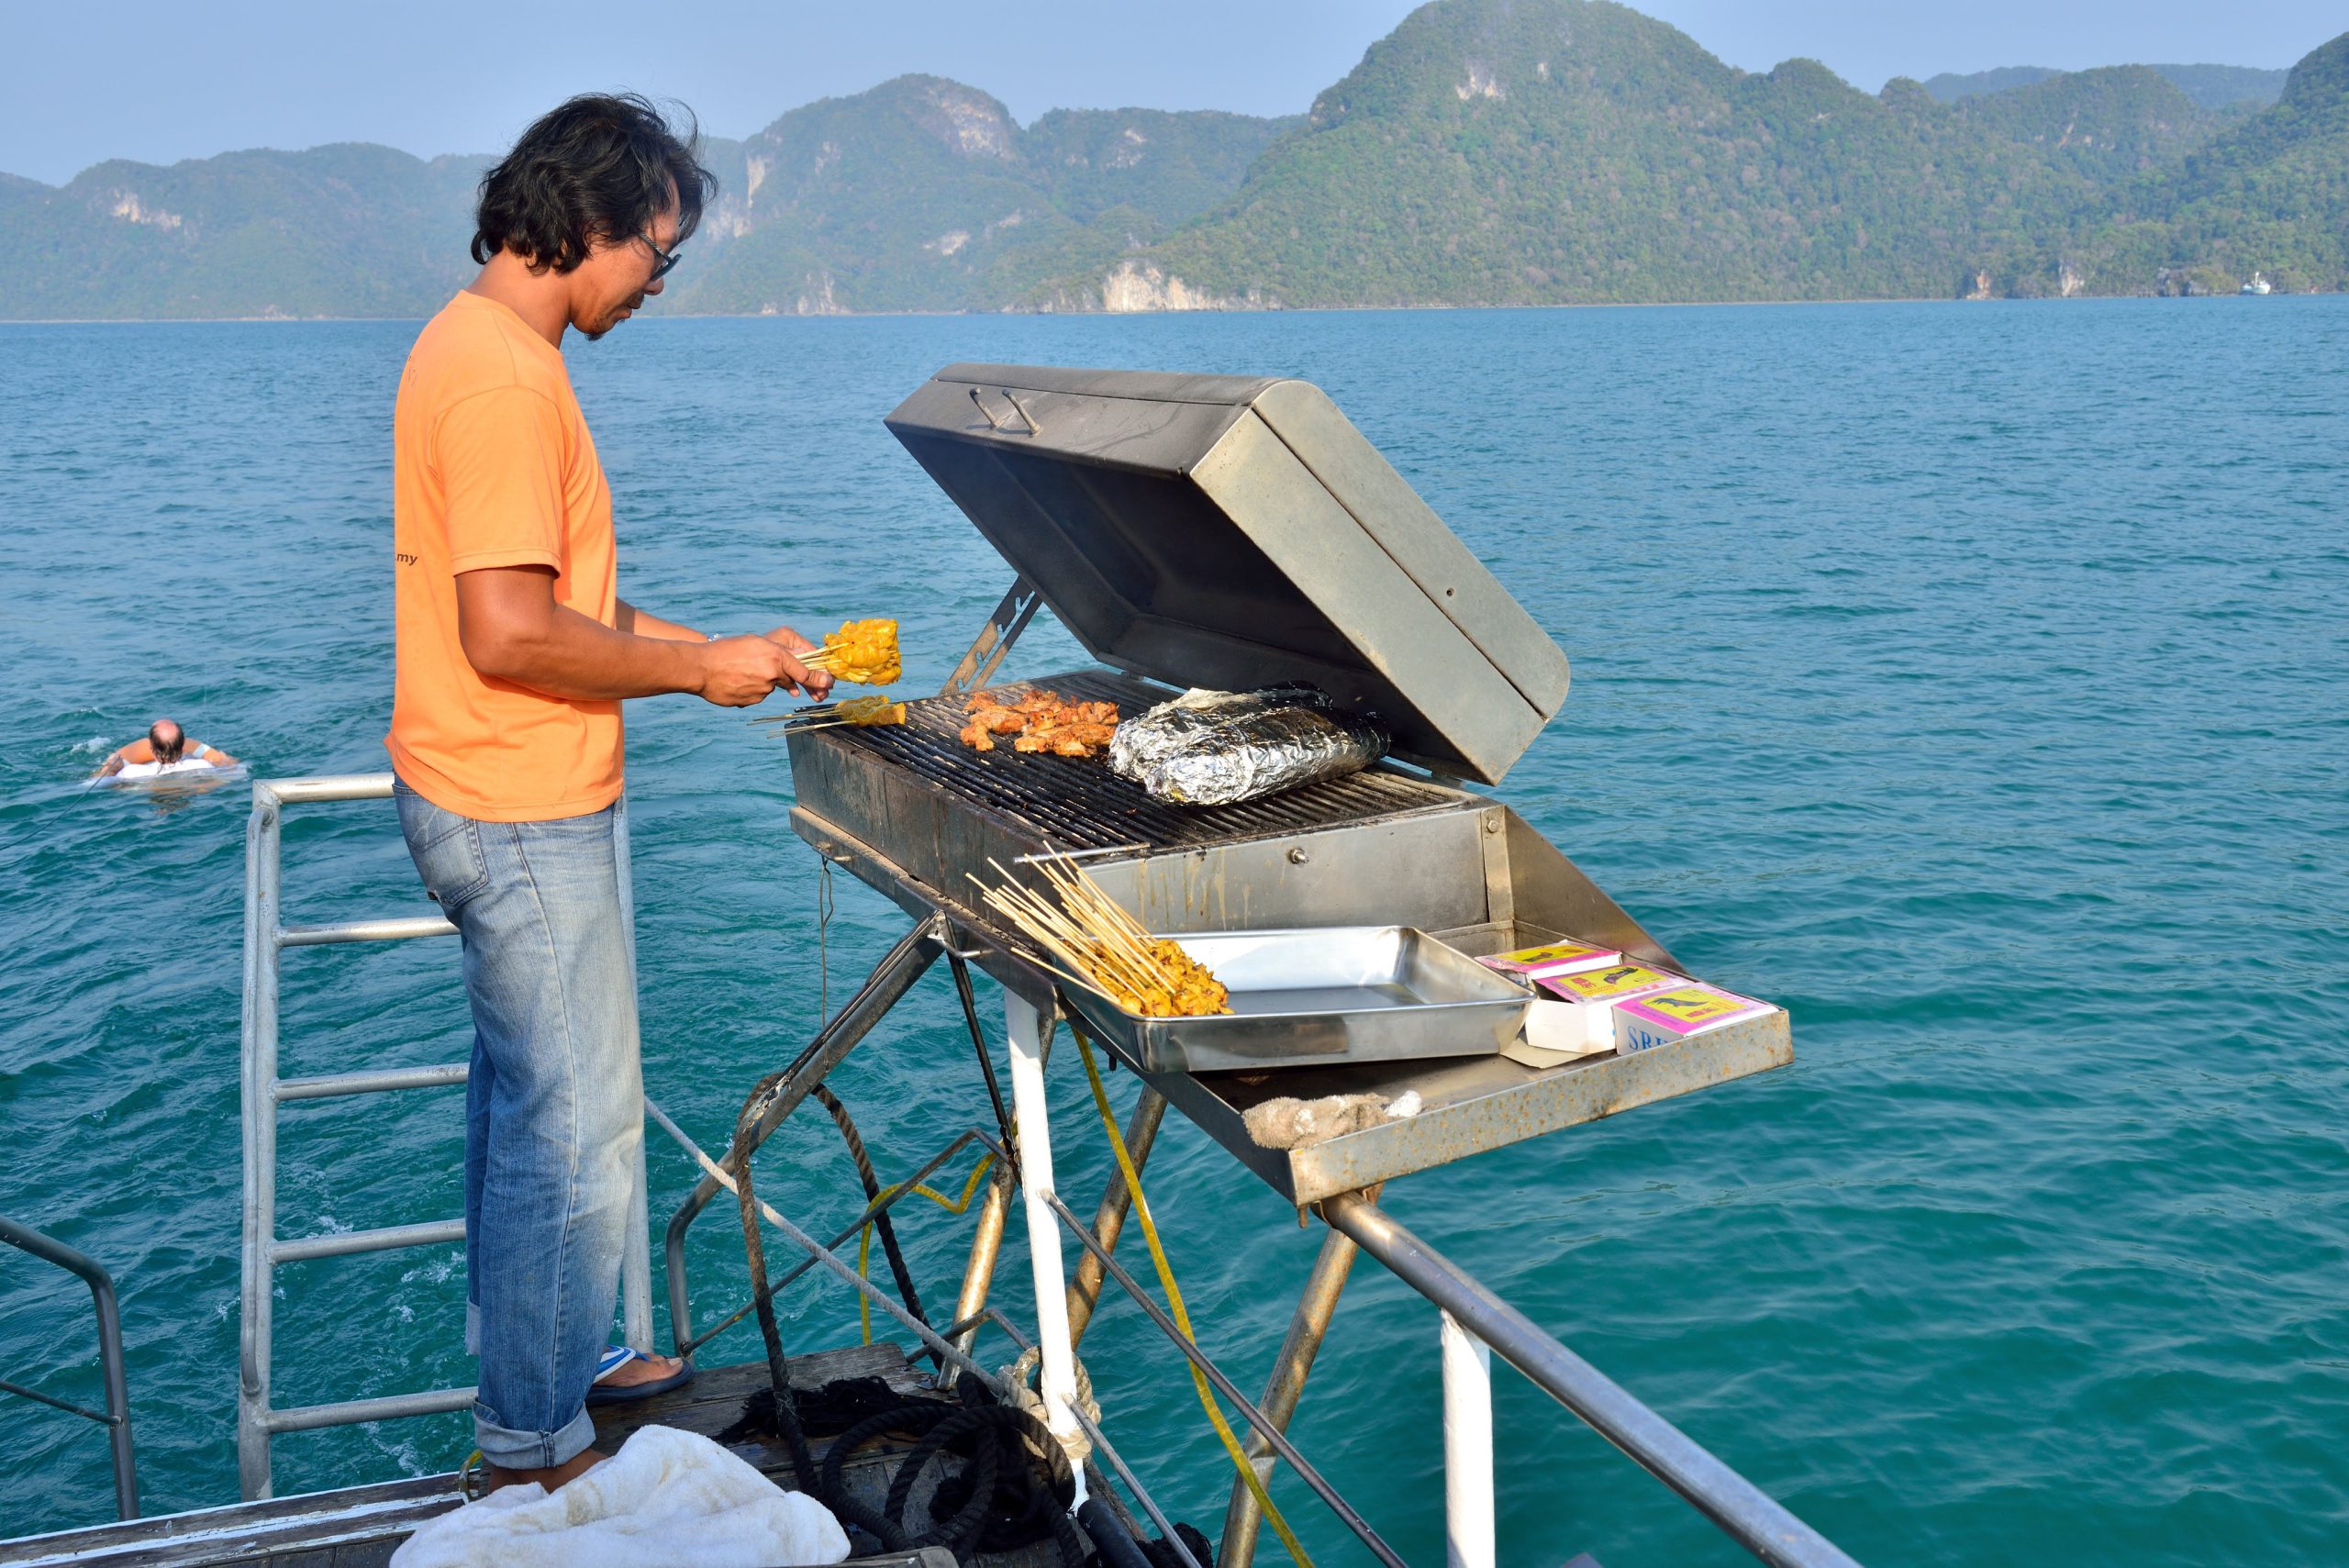 ツアーによっては、船上でサテーや魚をグリルし、できたての料理を味わえるところもある。